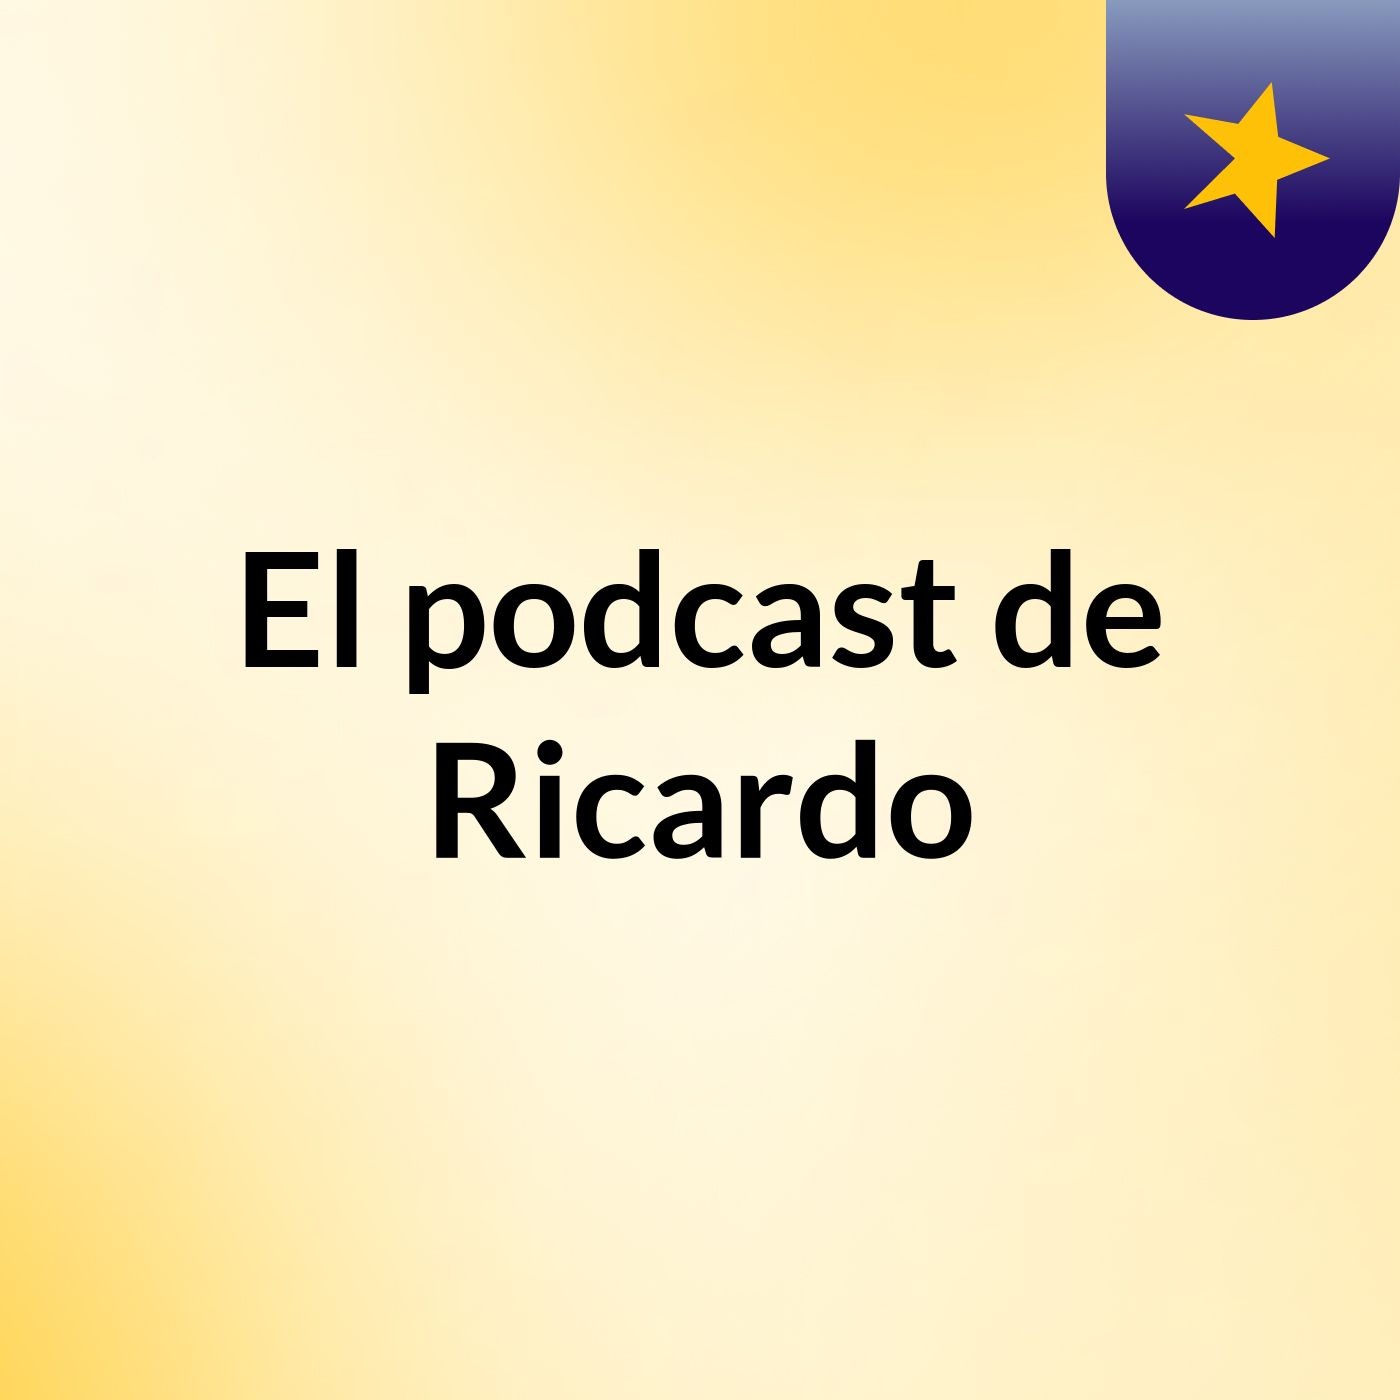 El podcast de Ricardo